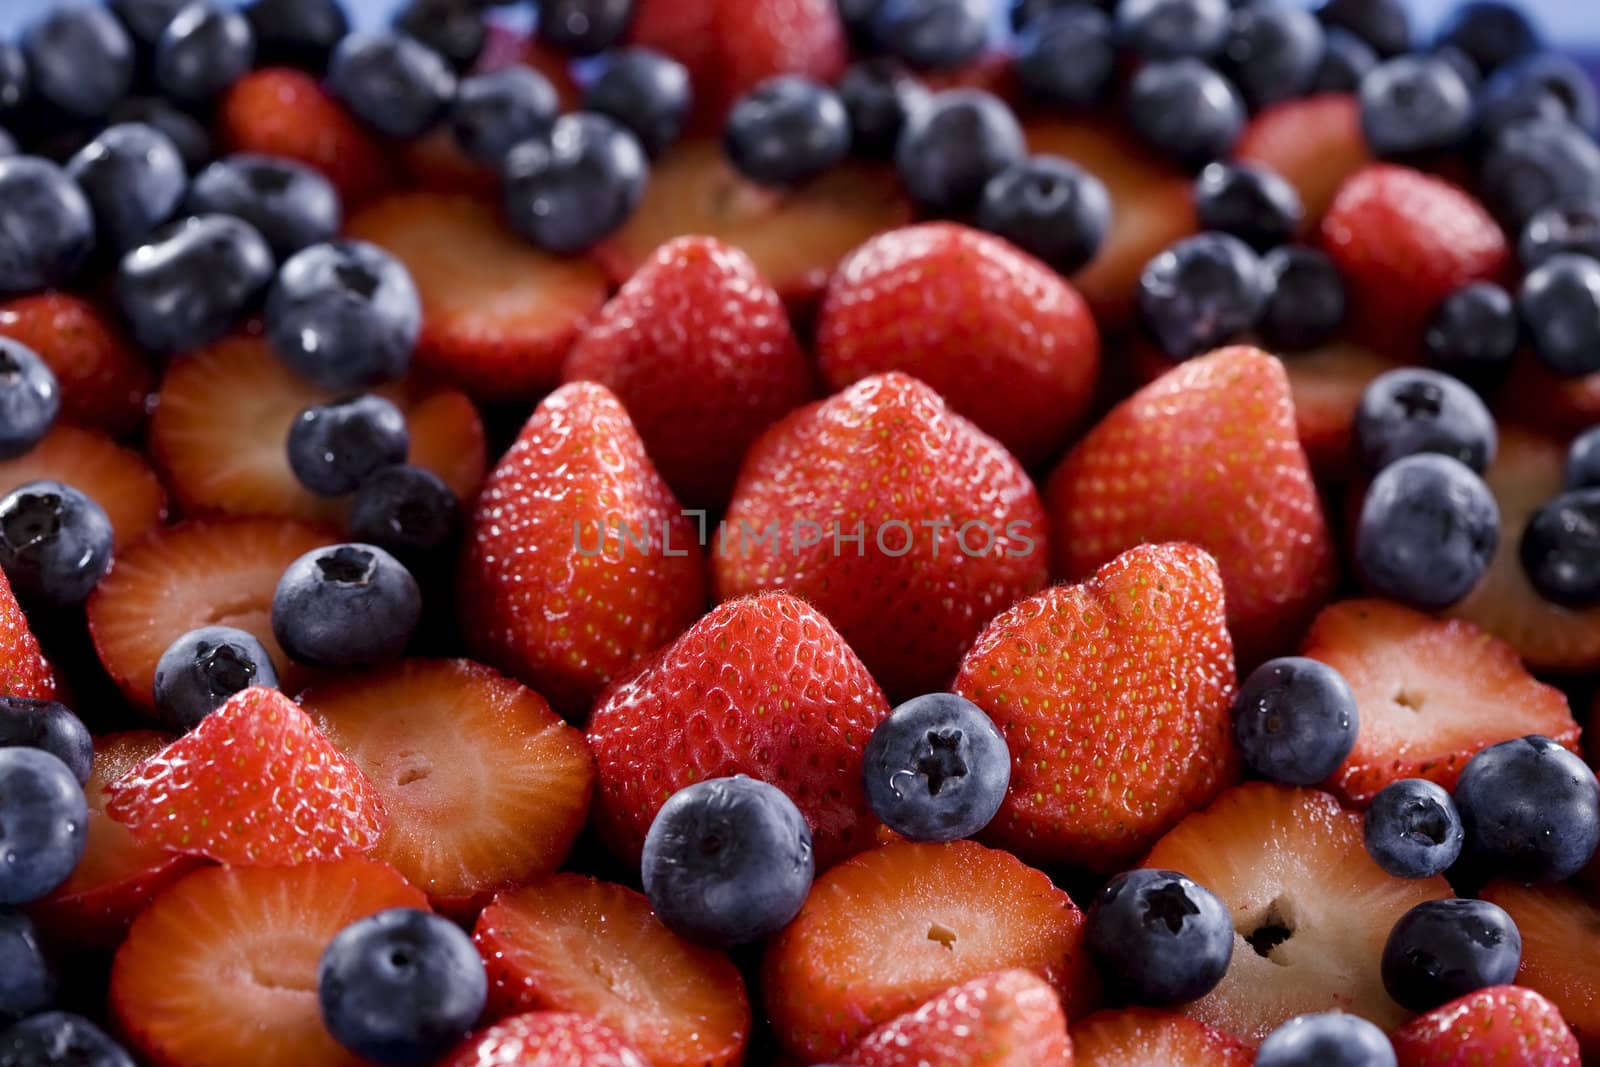 Fresh blueberries and strawberries by jarenwicklund